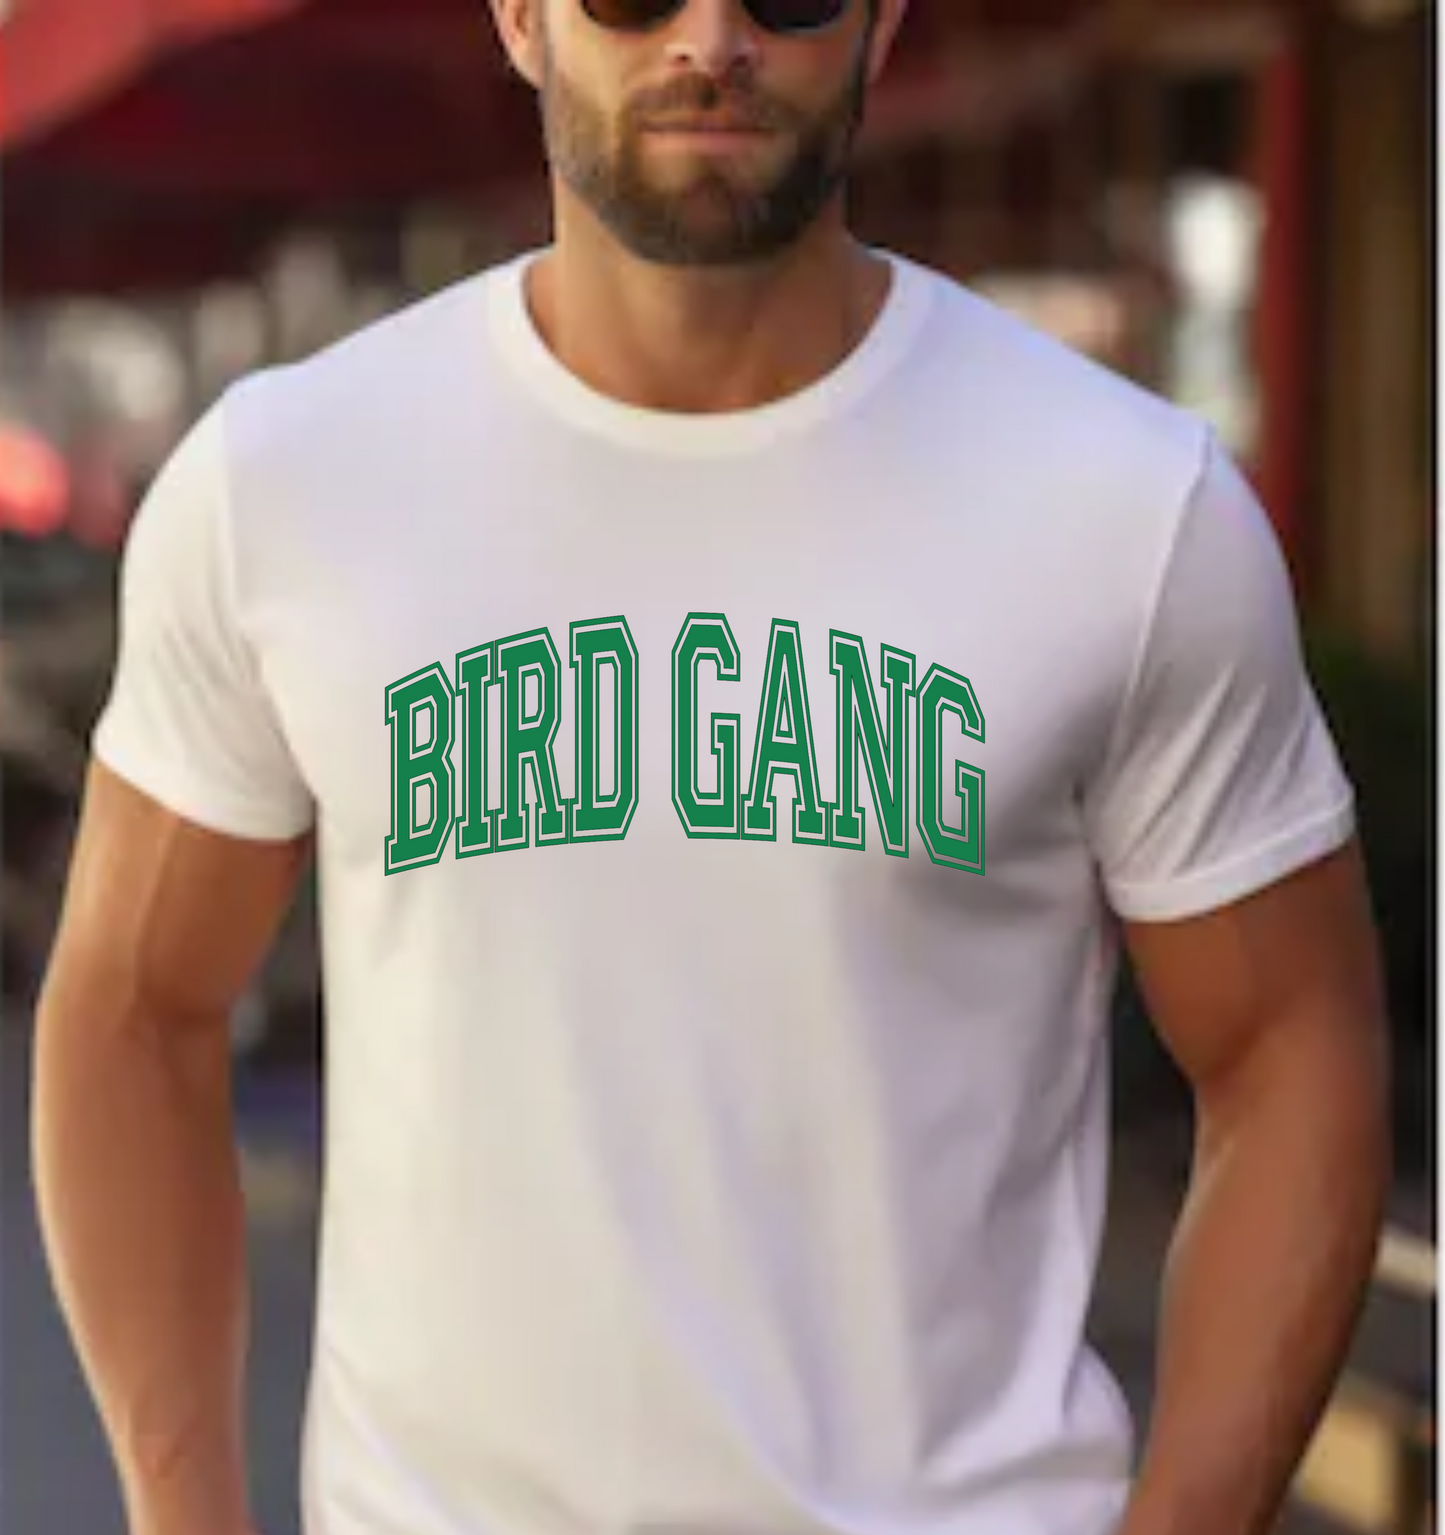 Eagles Bird Gang tee